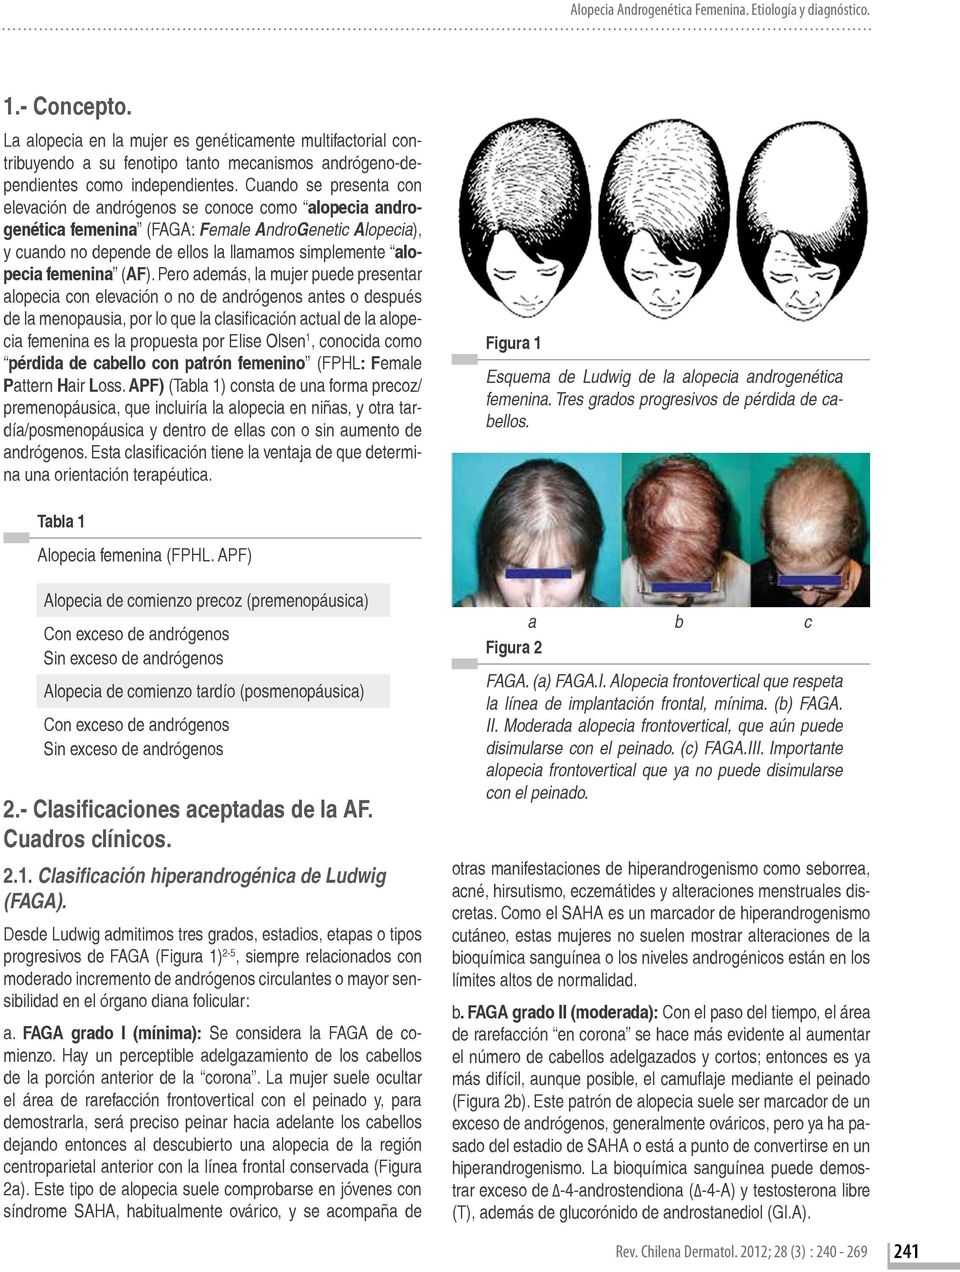 Cuando se presenta con elevación de andrógenos se conoce como alopecia androgenética femenina (FAGA: Female AndroGenetic Alopecia), y cuando no depende de ellos la llamamos simplemente alopecia